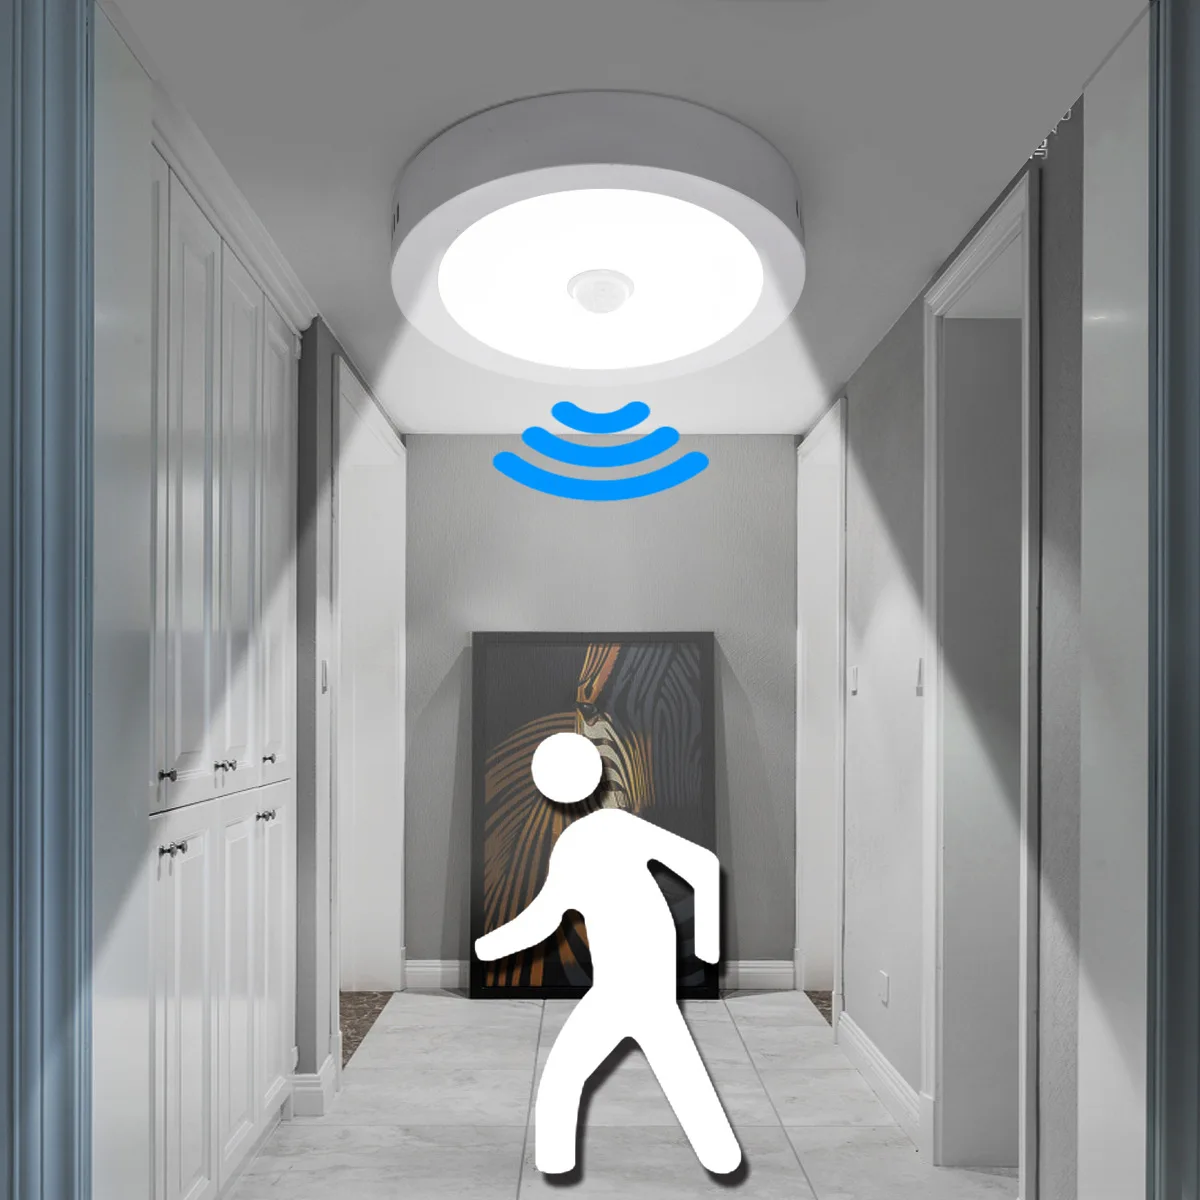 

LED PIR Motion Sensor Light 110-240V Ceiling Lamp Home Corridor Stair Veranda Living Room Bedroom Toilet Sensor Smart Nightlight